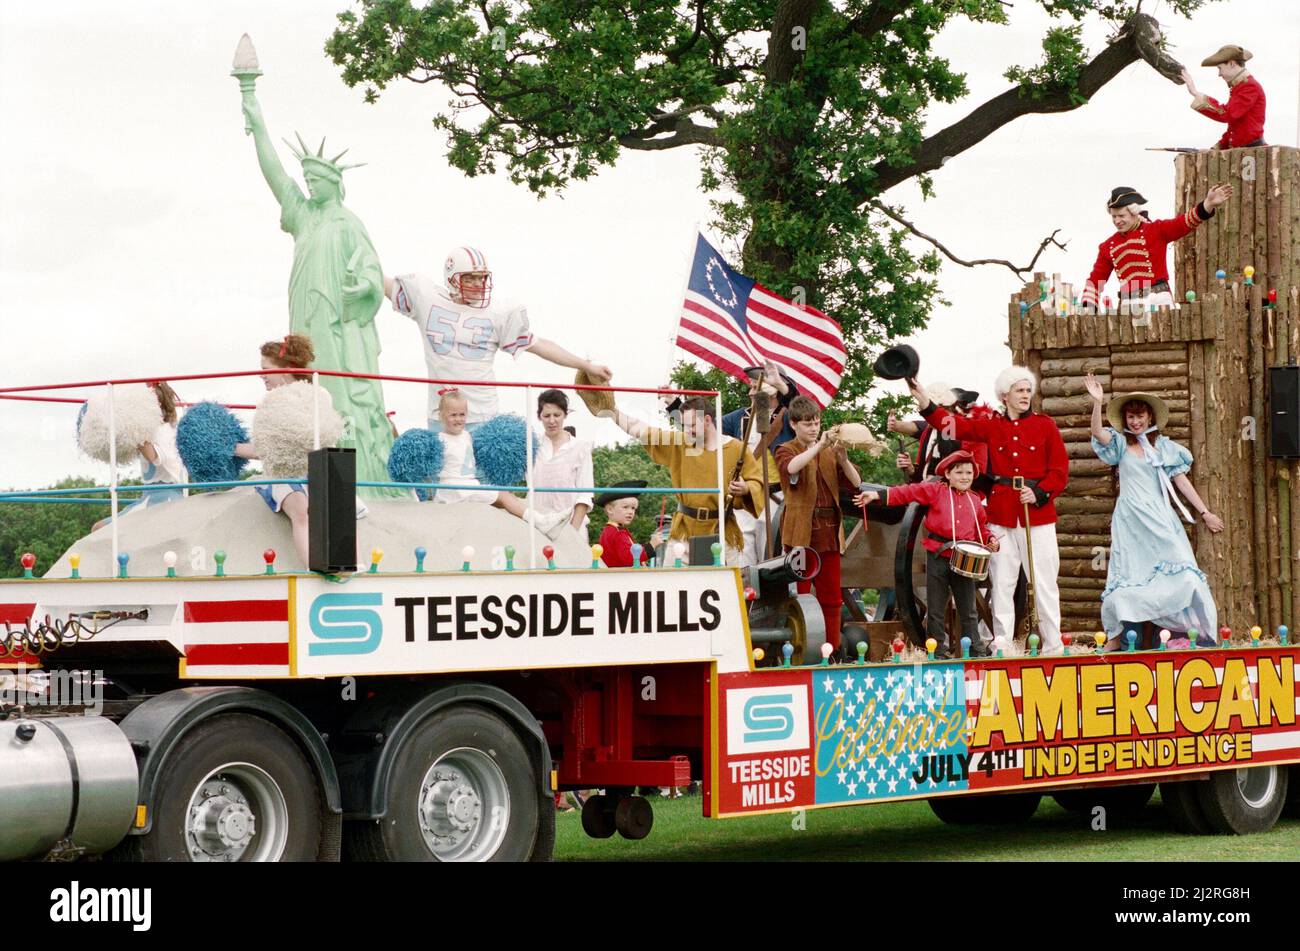 Le Gala de l'acier britannique, Teesside. Un des flotteurs au Gala avec des adultes et des enfants vêtus de costumes. 4th juillet 1993. Banque D'Images